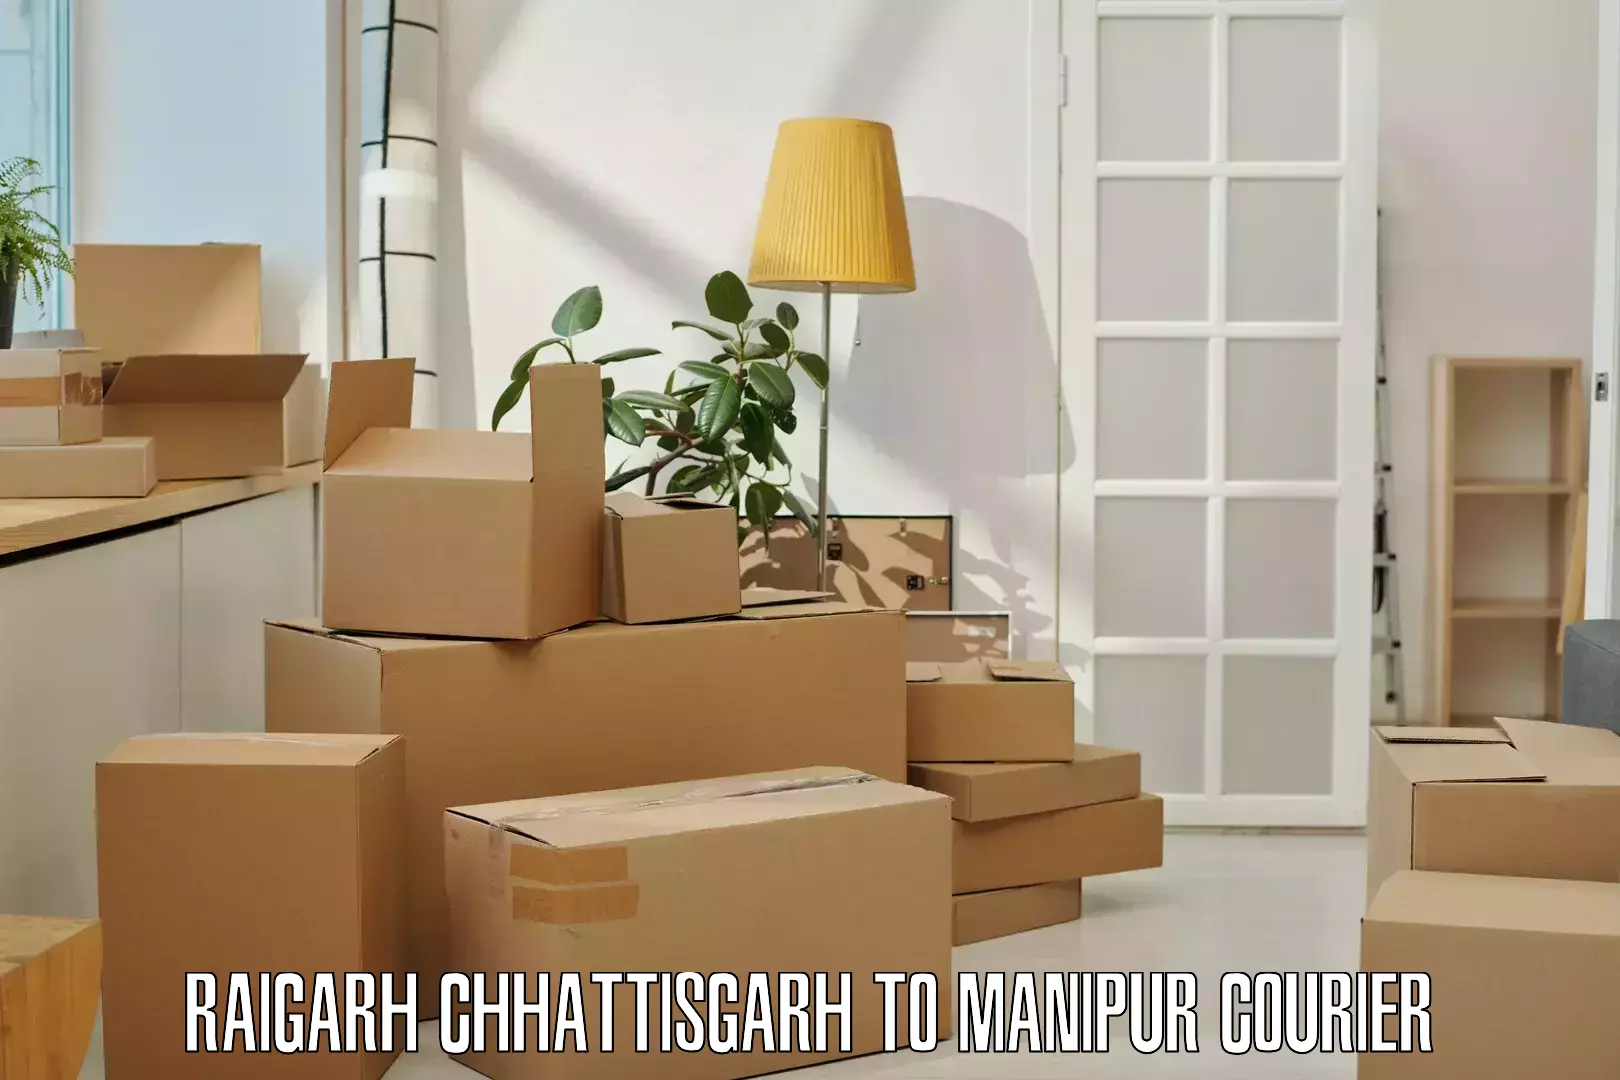 Professional parcel services Raigarh Chhattisgarh to Senapati